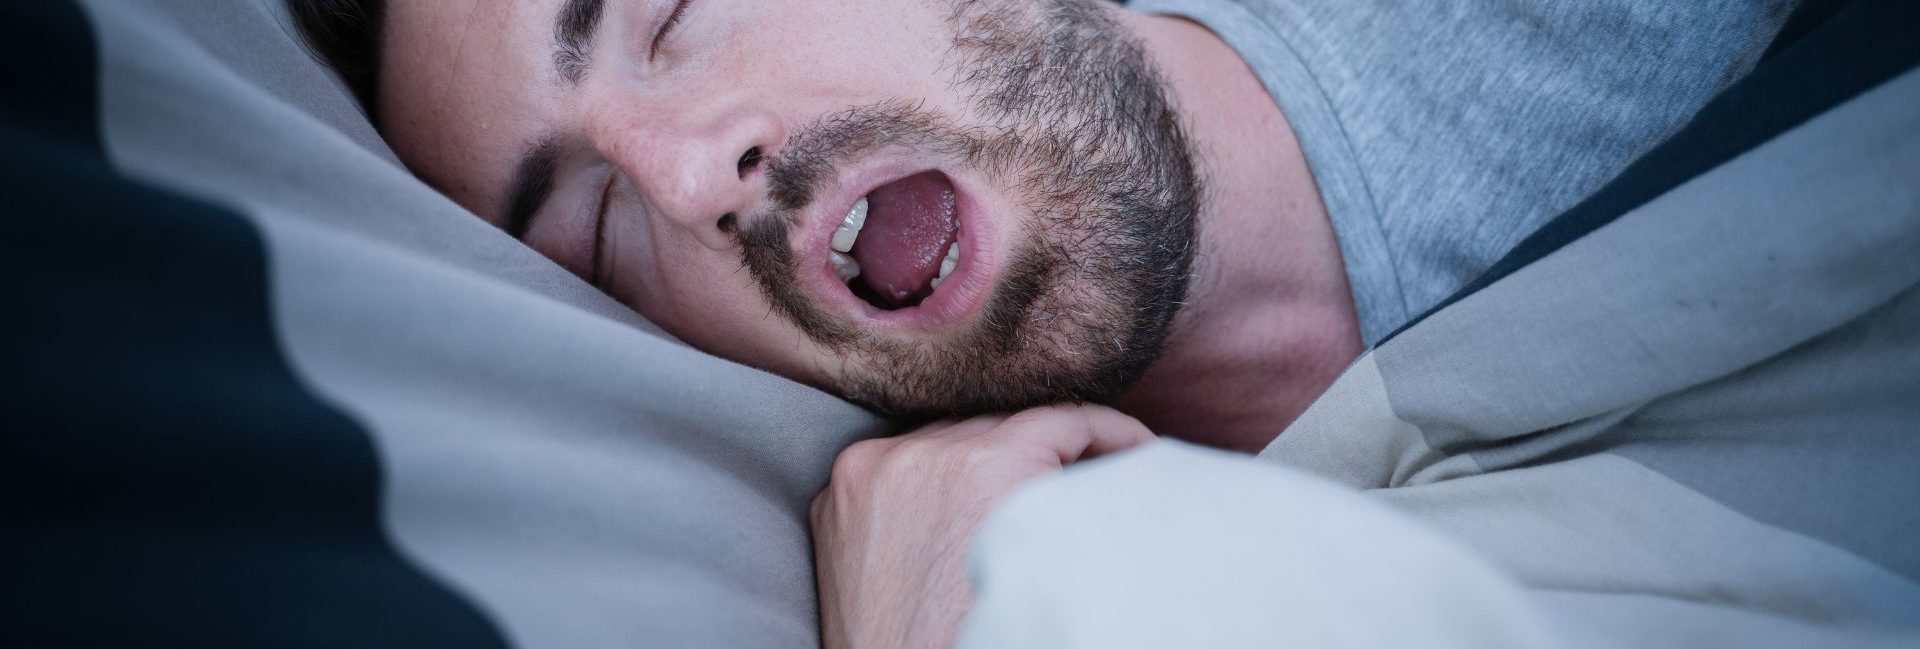 Riscos da Apneia do Sono